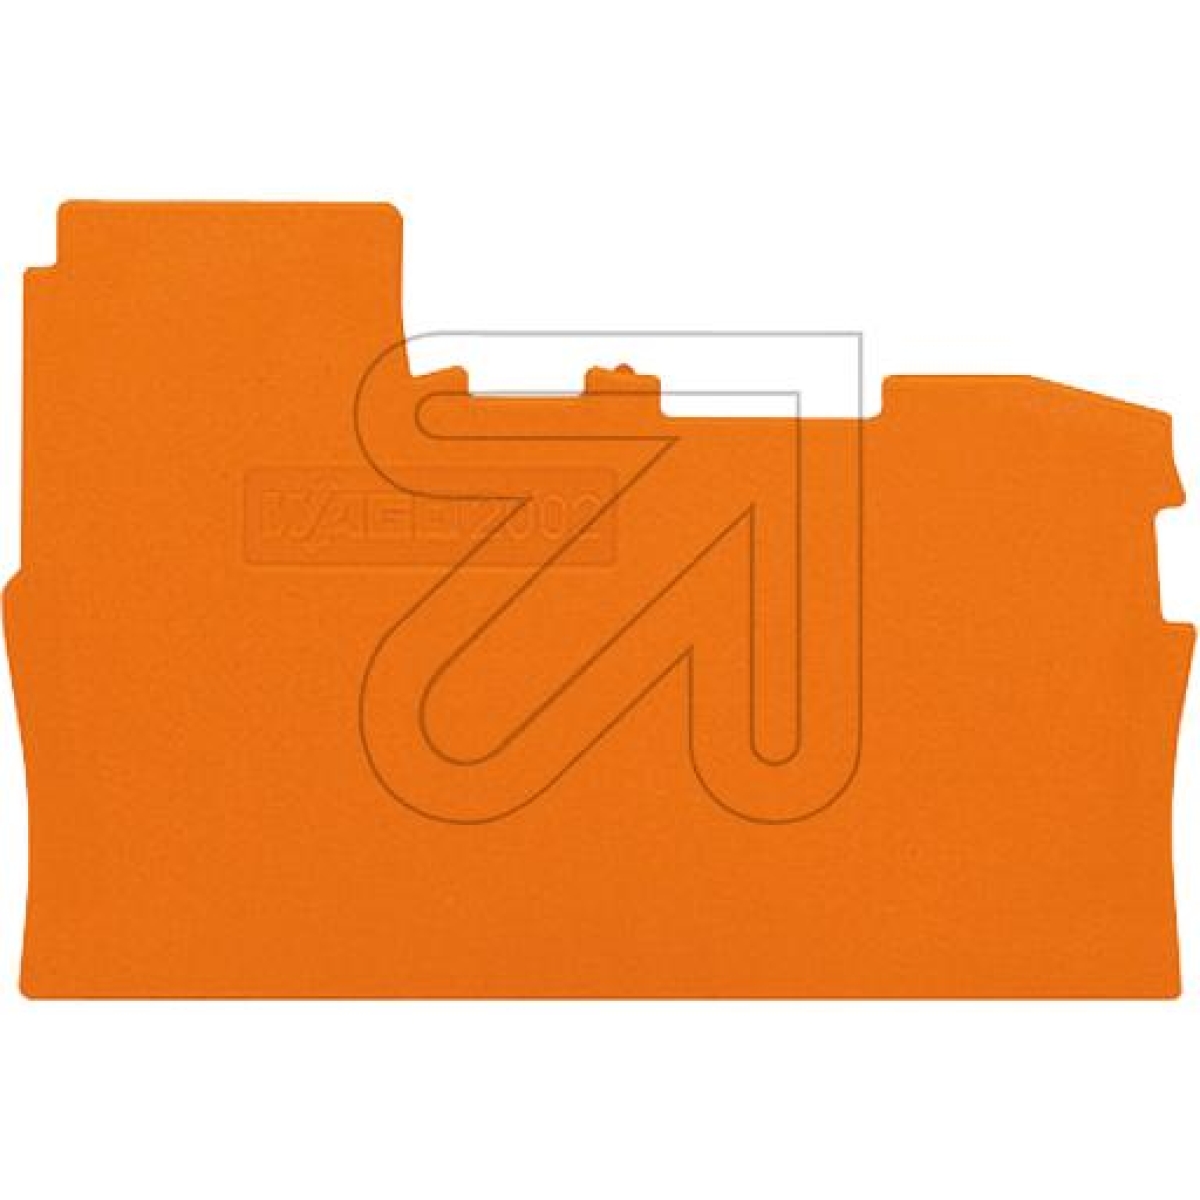 WAGOAbschlussplatte orange 2002-7192Artikel-Nr: 162385